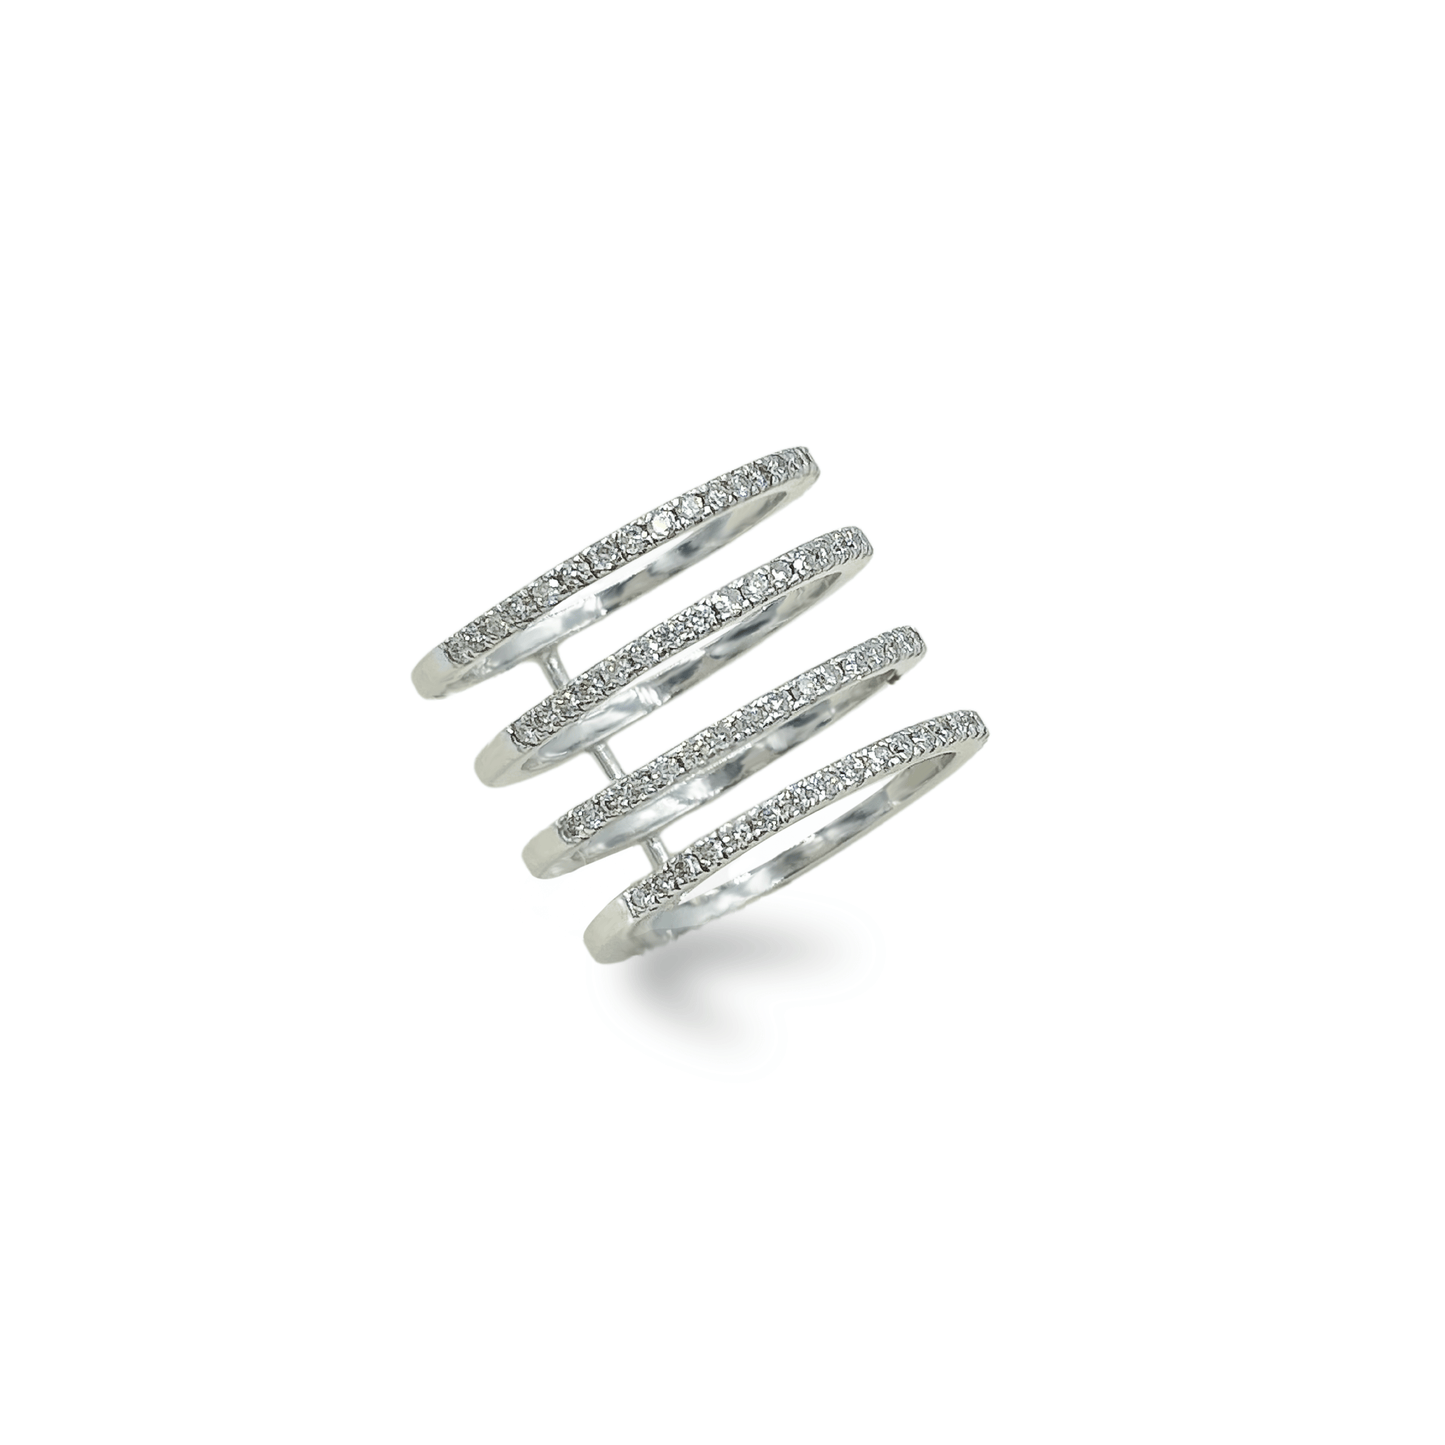 4 Row Diamond Half Eternity with 18k White Gold Medium- جرس - Luxury Diamond Jewelry shop Dubai - SABA DIAMONDS